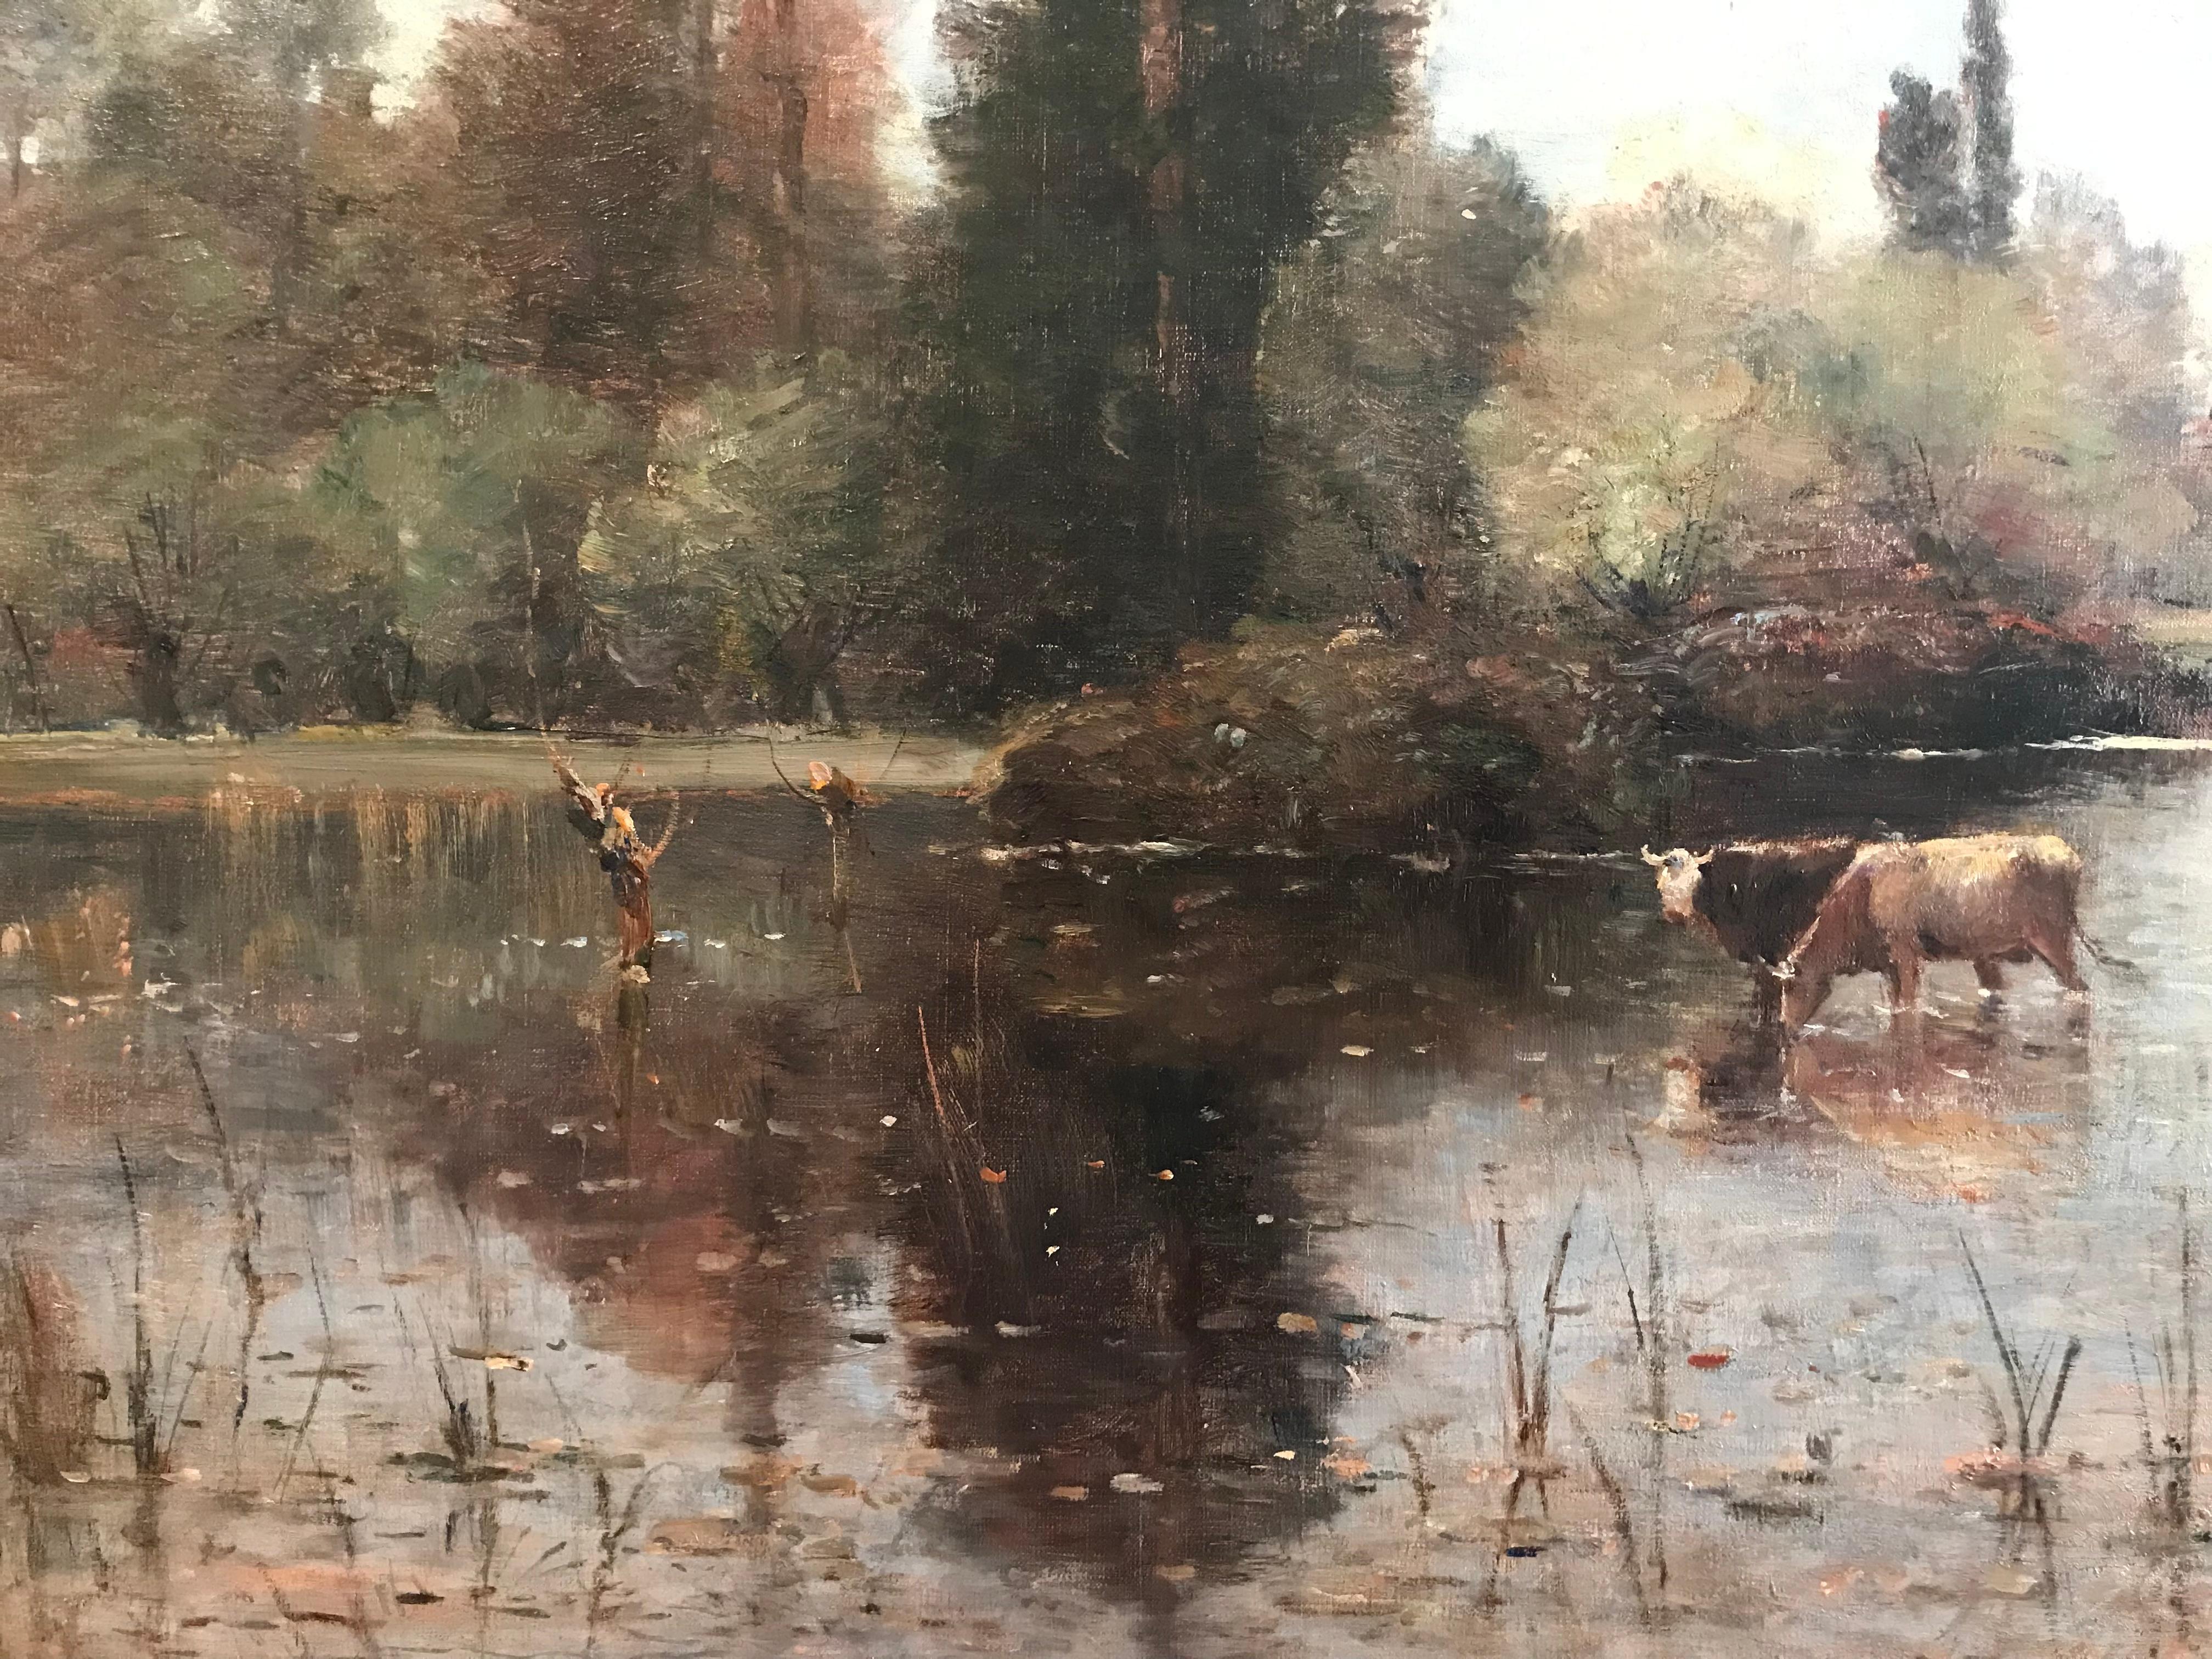 Louis Aimé Japy (1840-1916)
Öl auf Leinwand

Kühe im Fluss mit Dorf im Hintergrund 
Signiert unten rechts, Japy. 

Leinwand 26